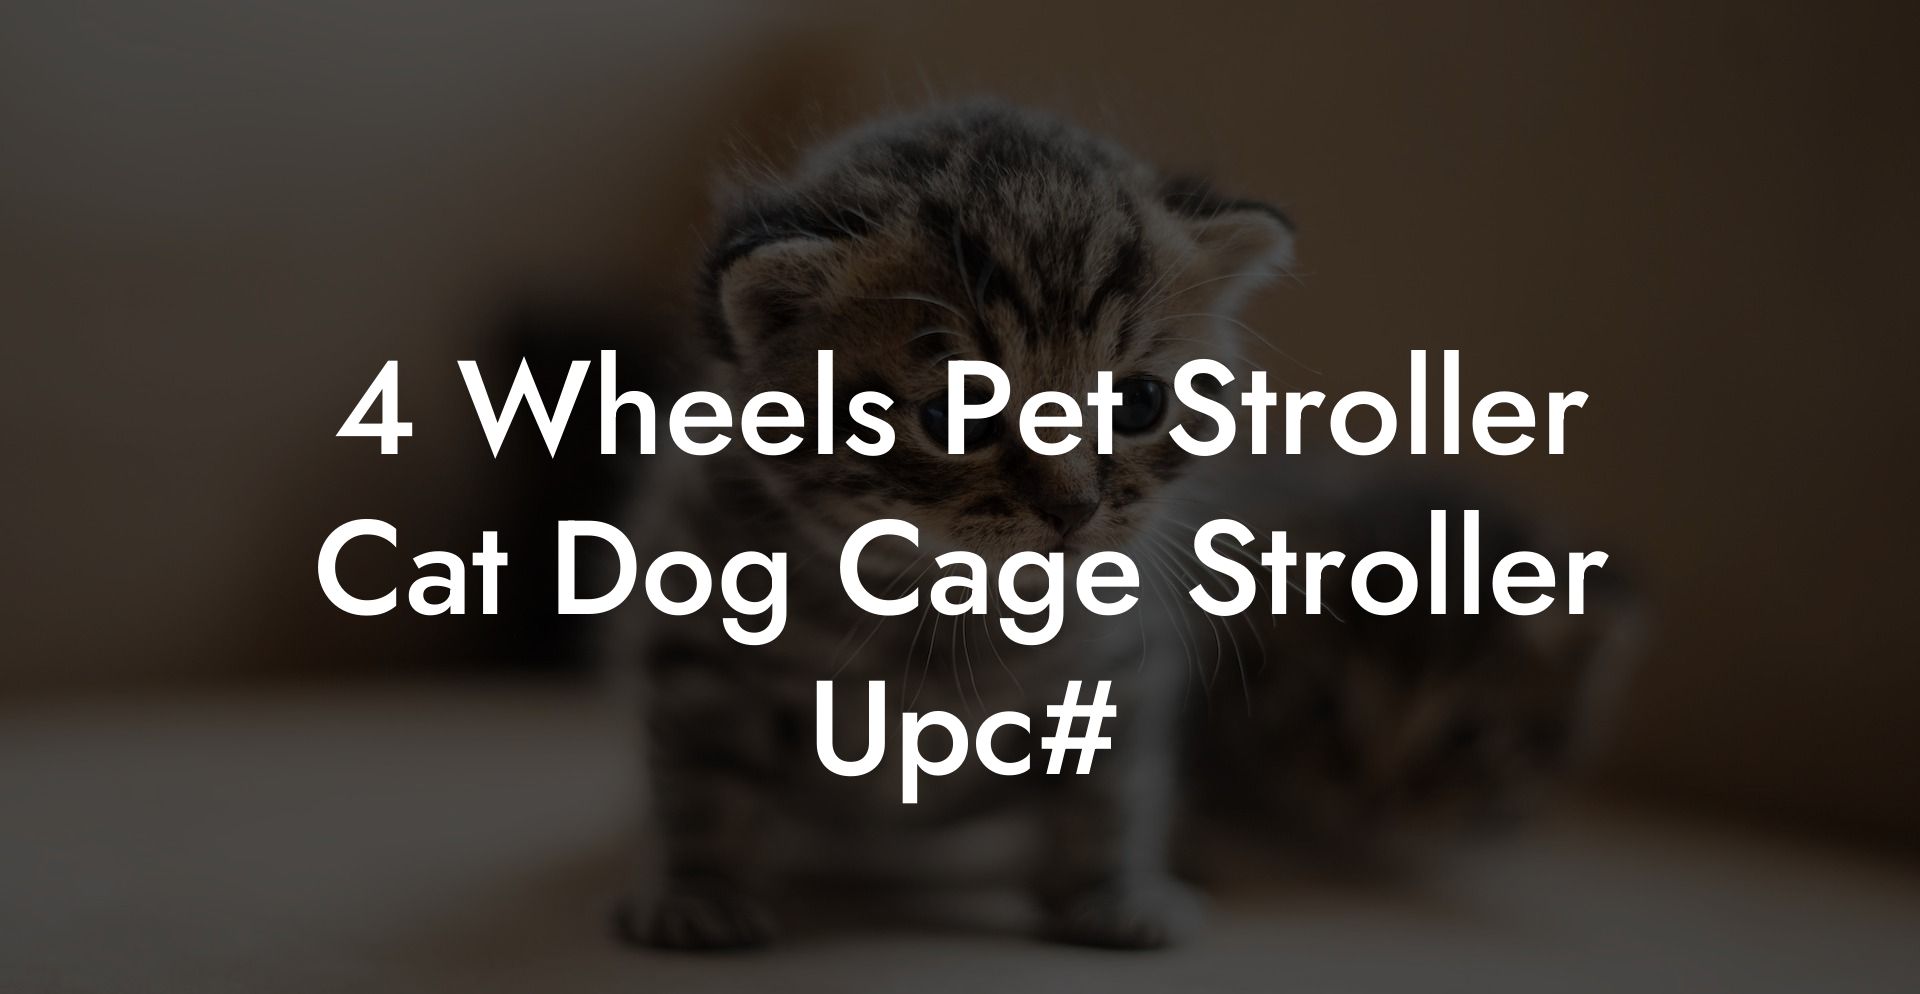 4 Wheels Pet Stroller Cat Dog Cage Stroller Upc#